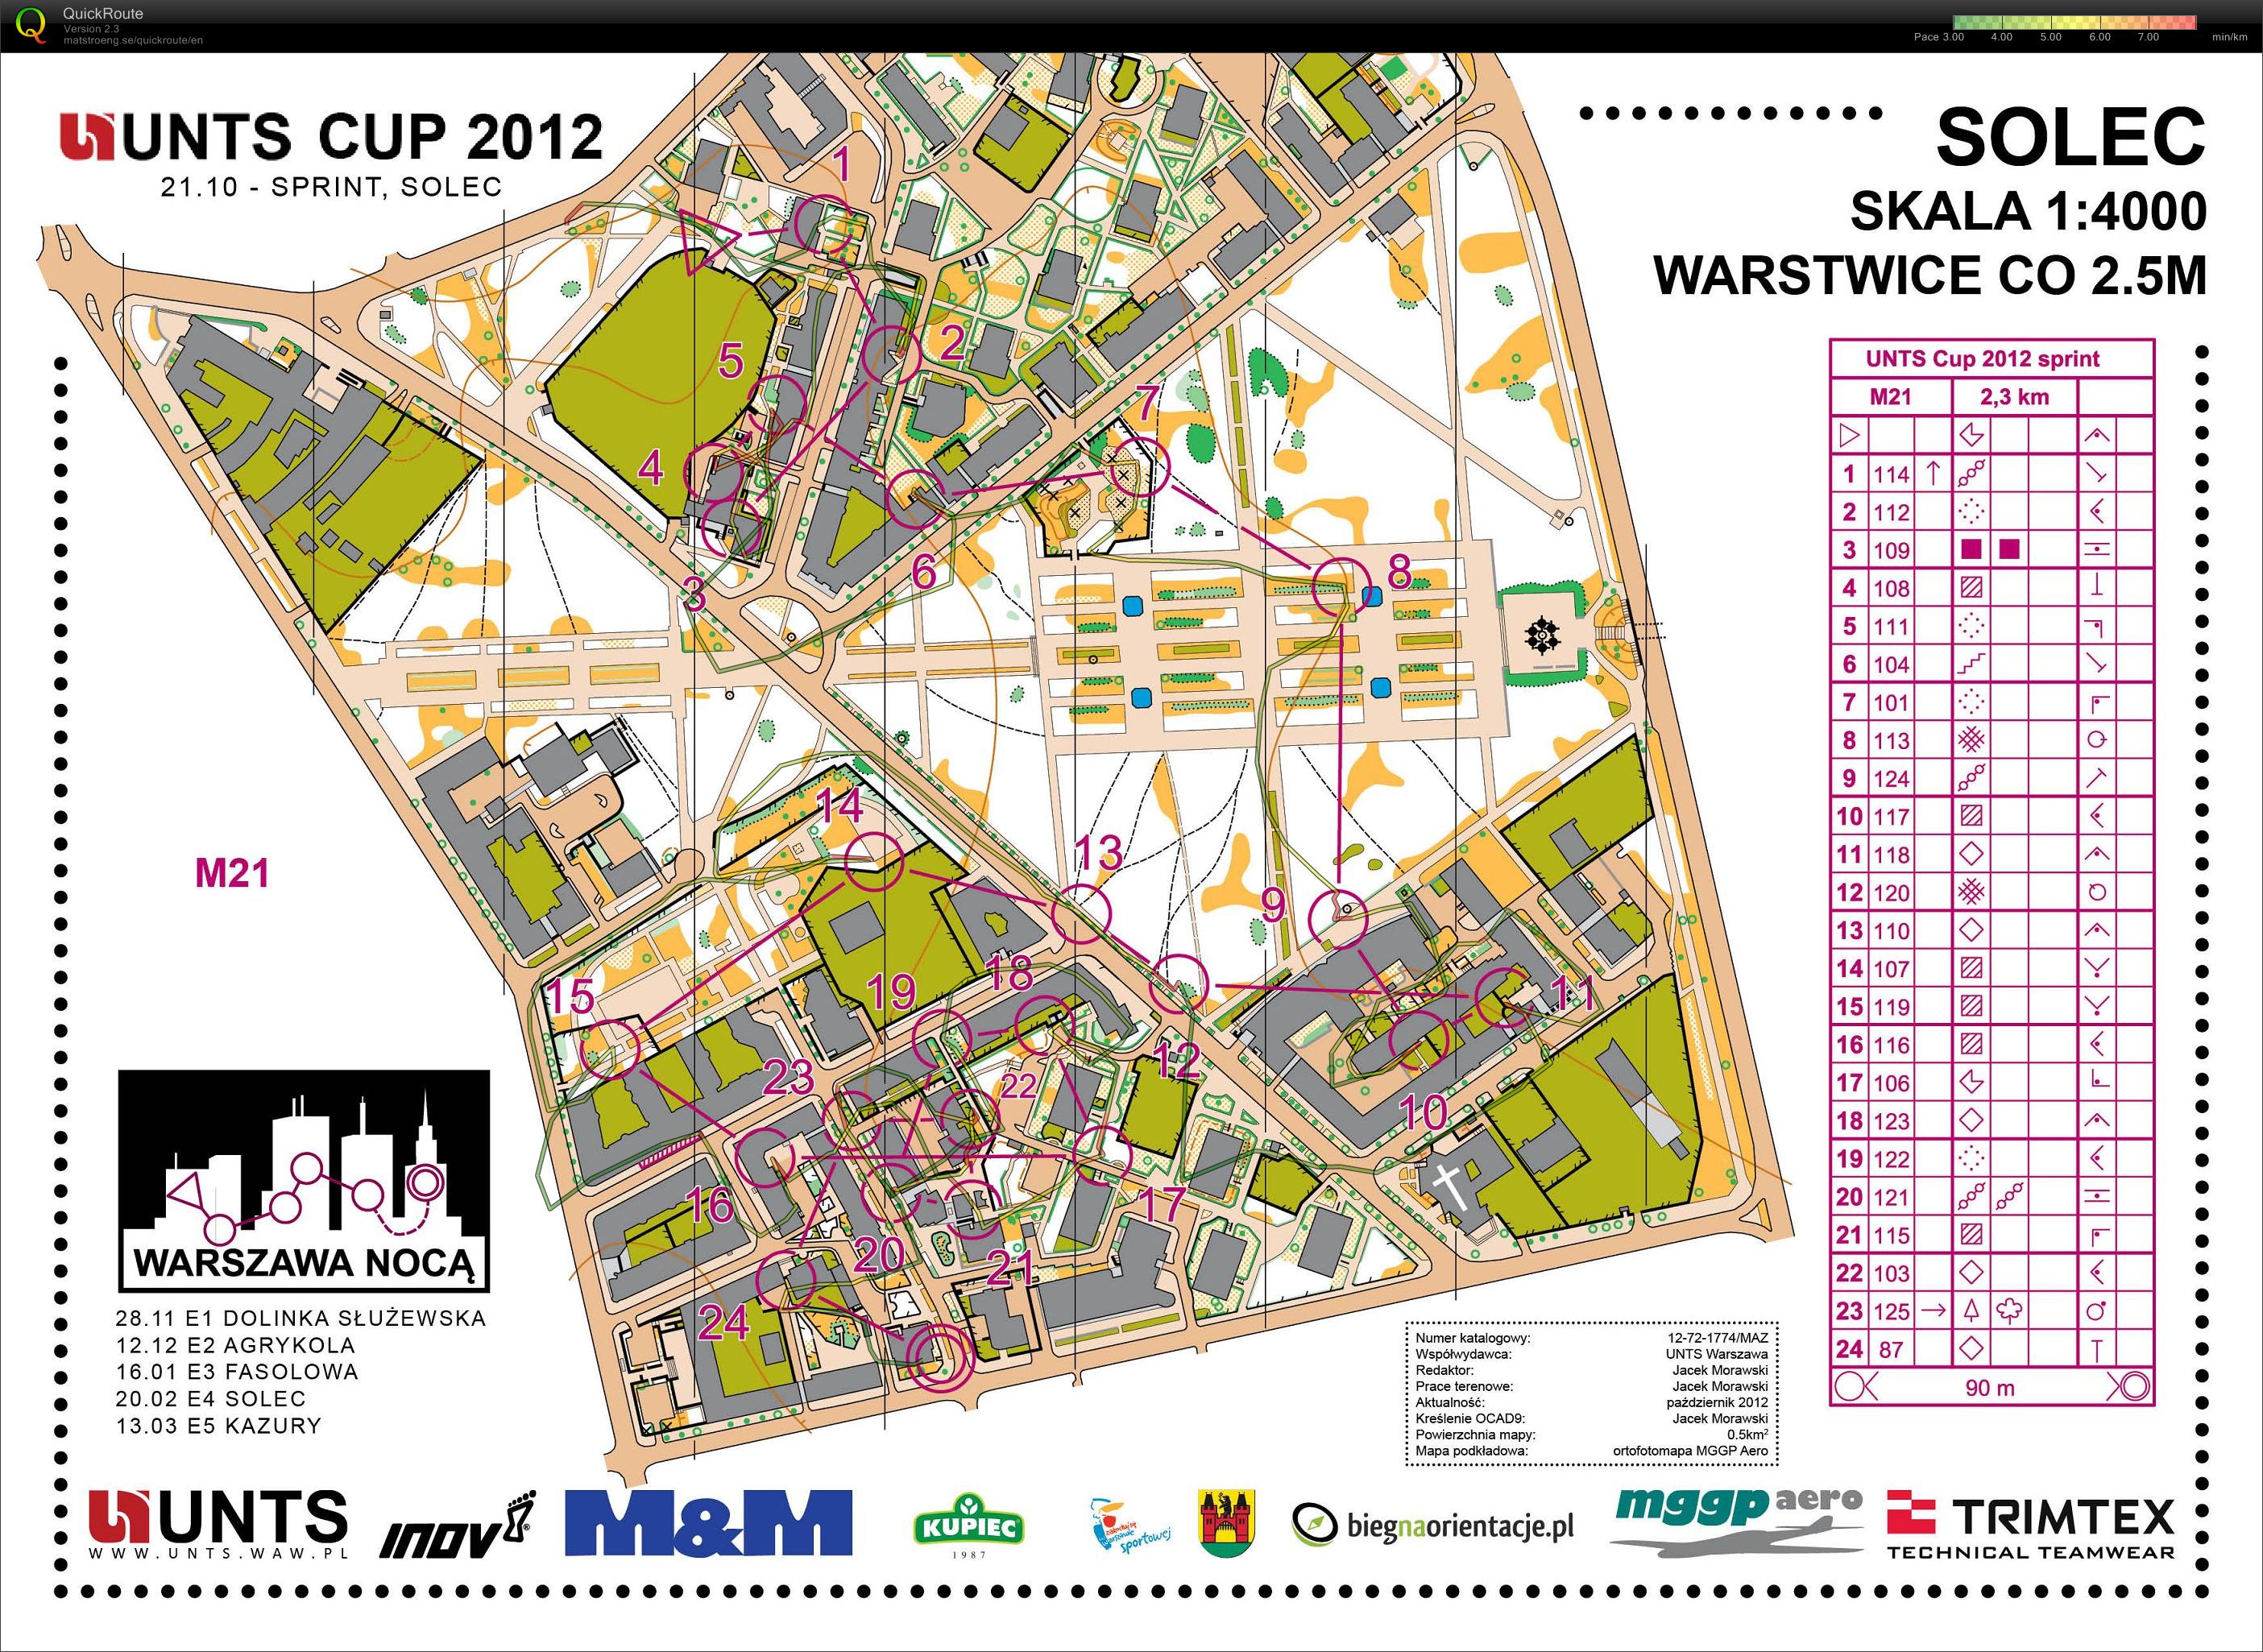 Z157 - Mistrzostwa Warszawy - sprint (21.10.2012)